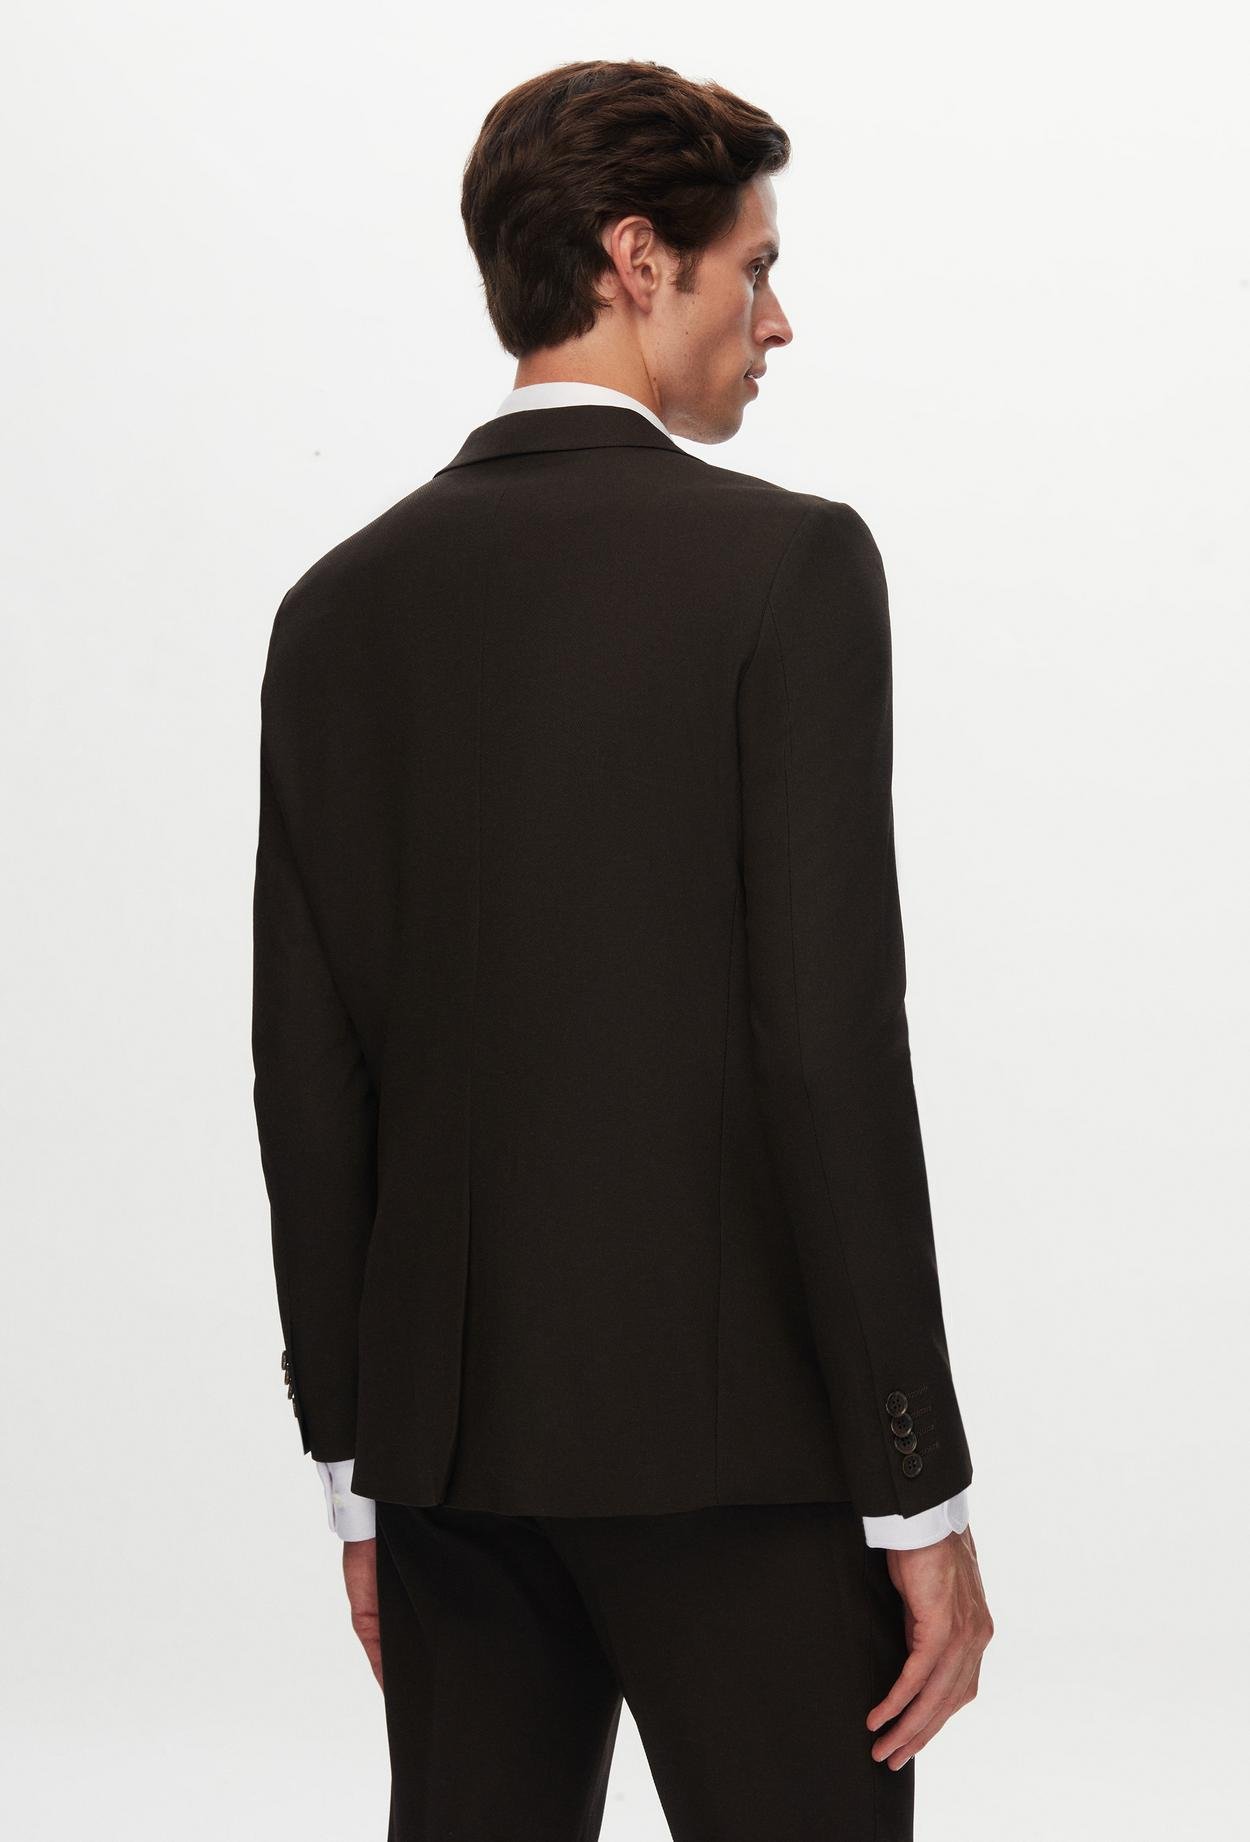 Twn Slim Fit Açık Kahverengi Armürlü Takim Elbise Kombinli